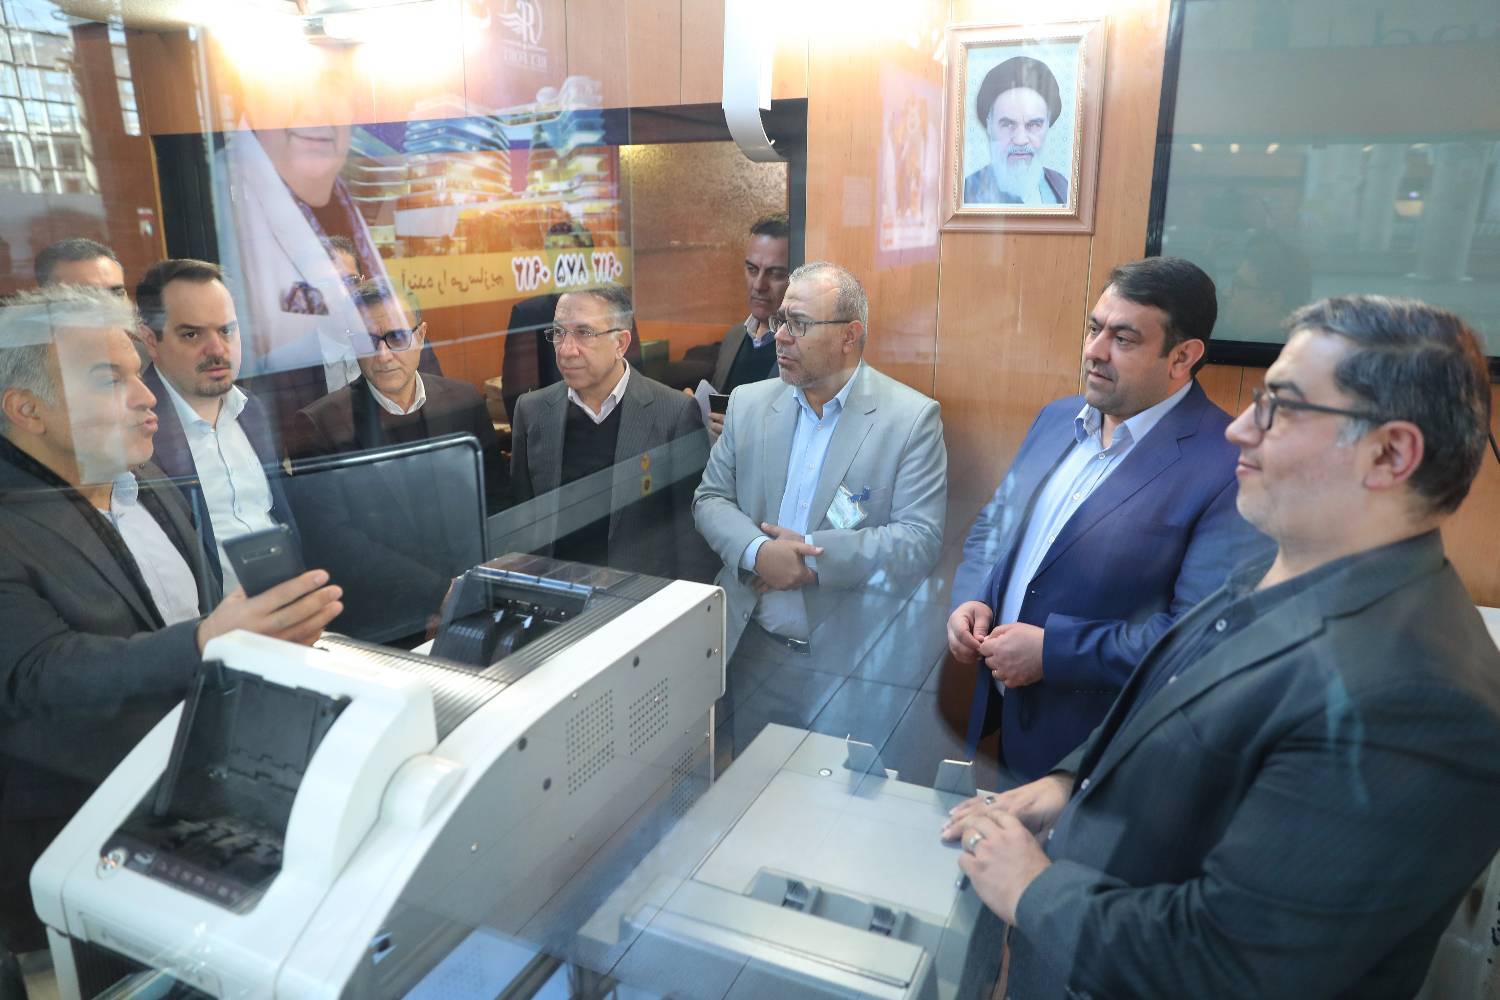 بازدید سرپرست بانک ملی ایران از خدمات بانکی و ارزی فرودگاه امام(ره)